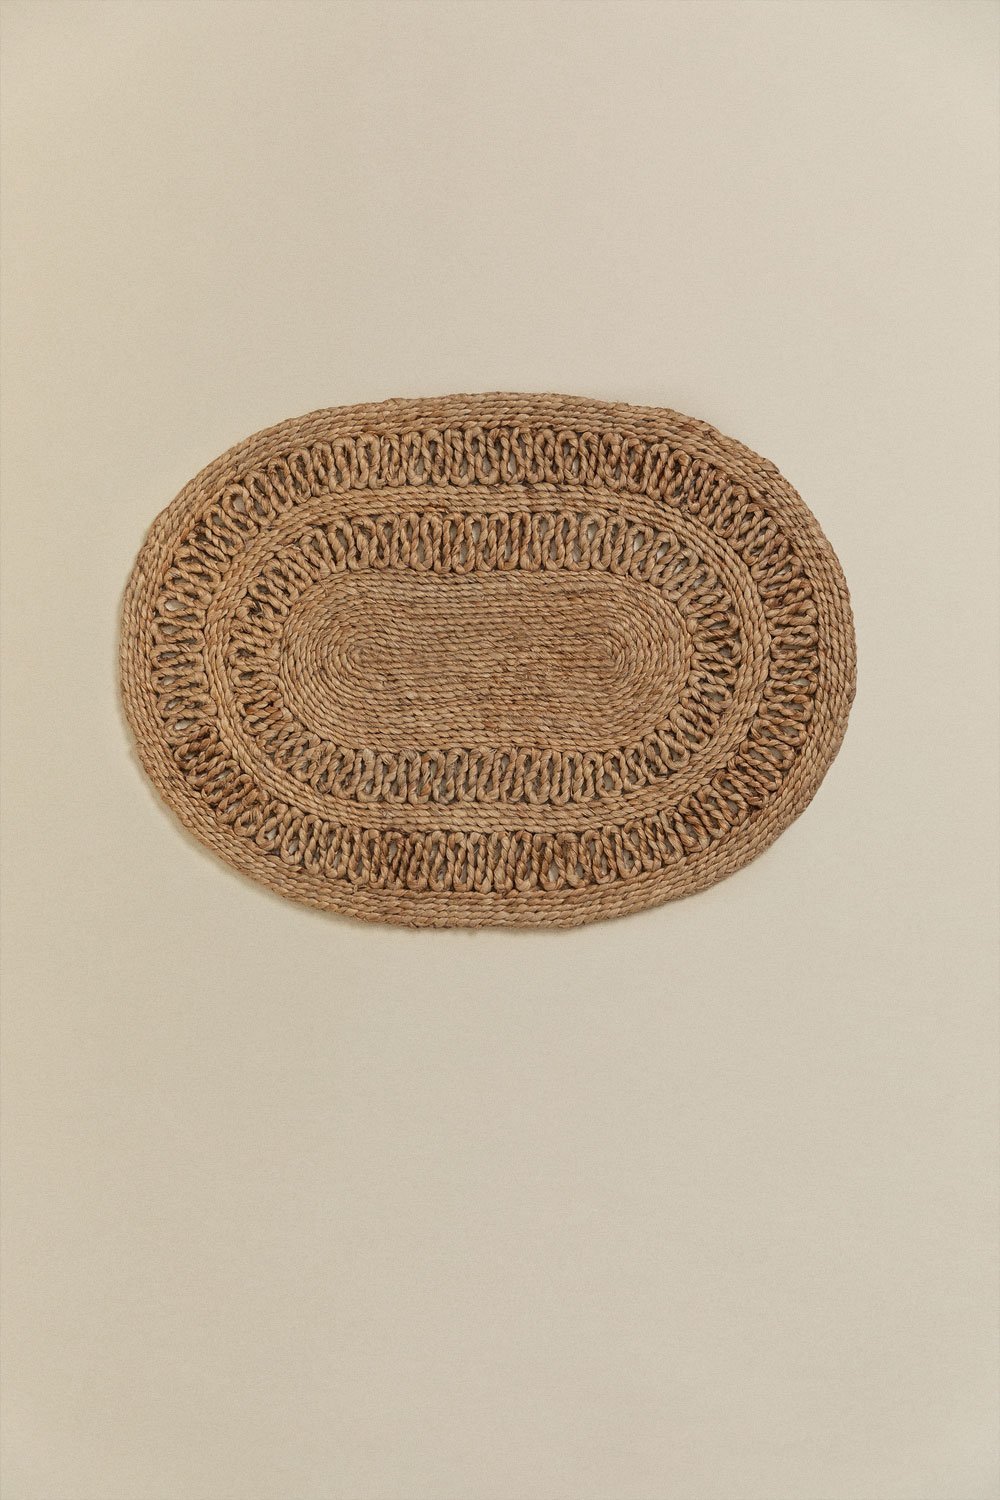 Ovale deurmat in jute (60x40 cm) Koblet, galerij beeld 2